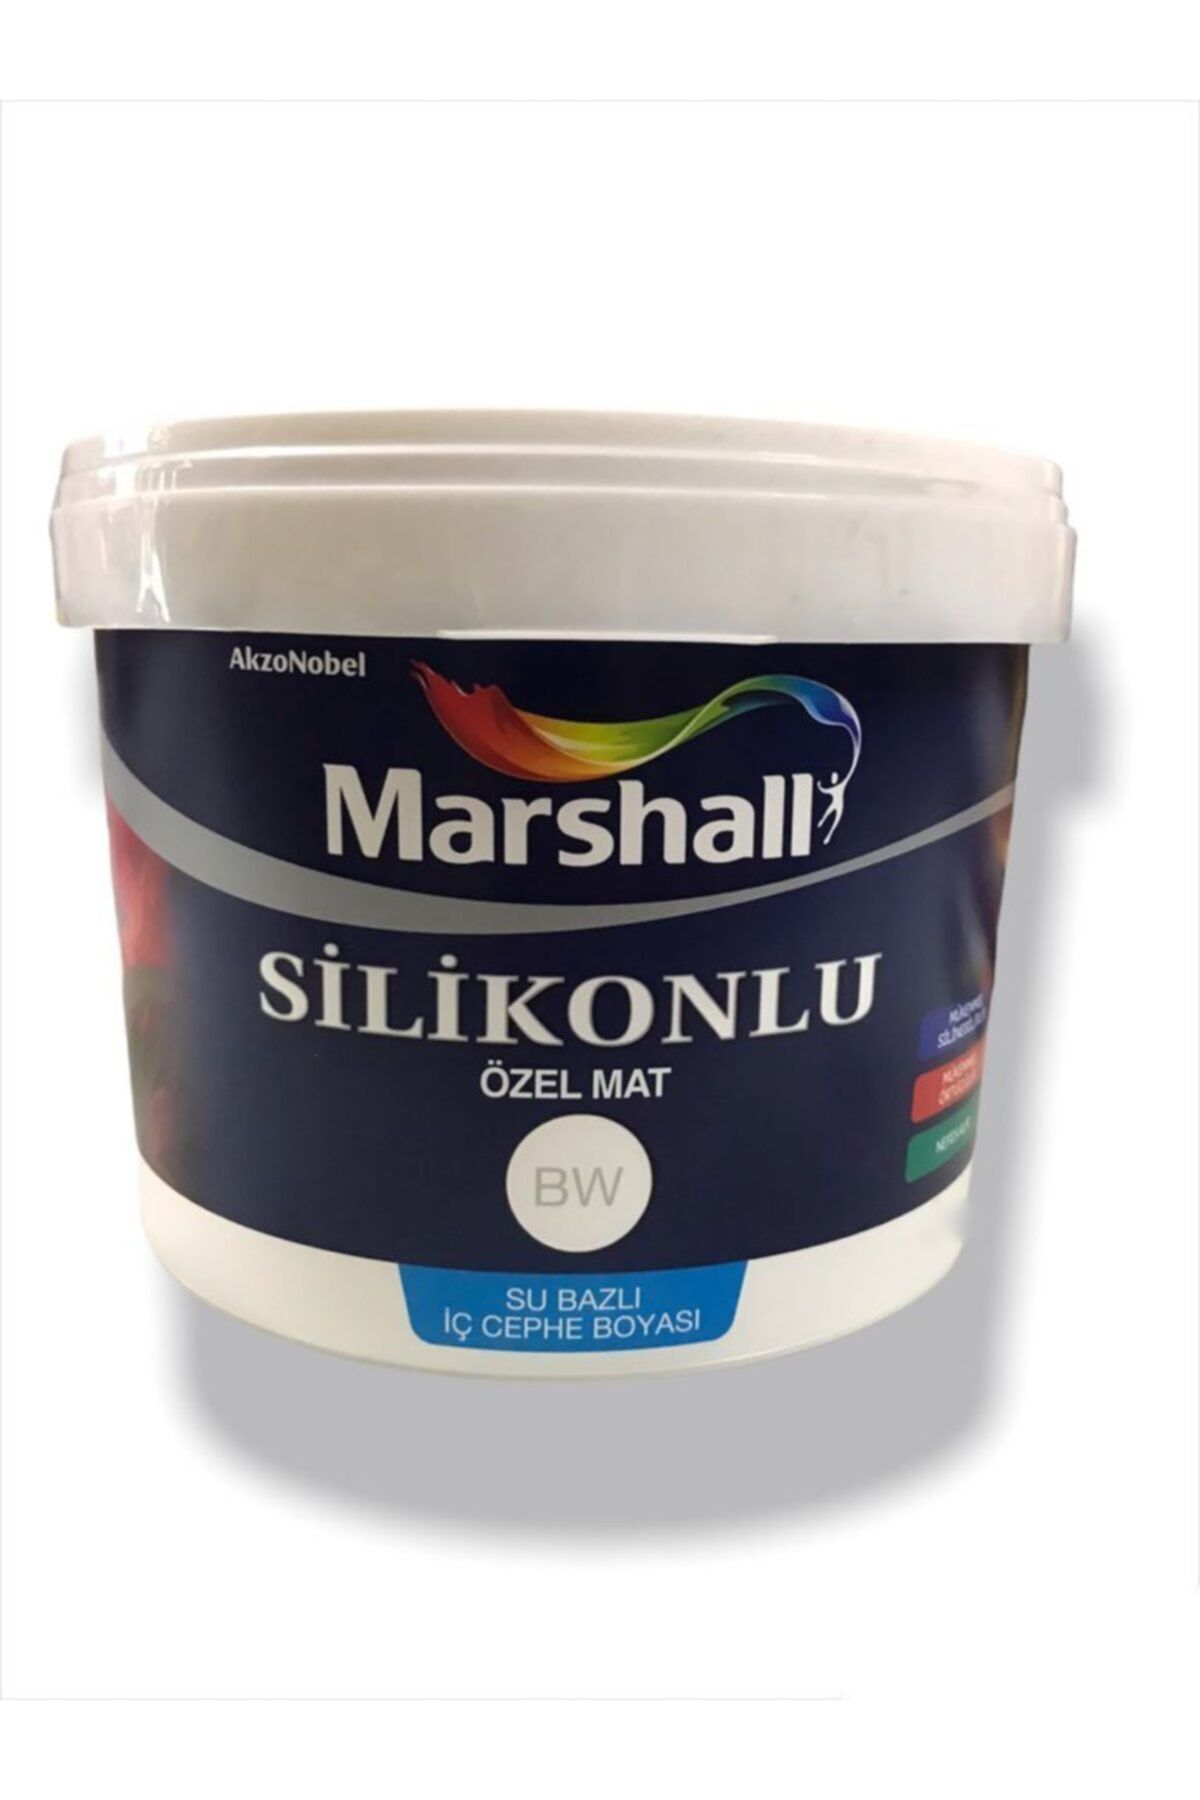 Marshall Silikonlu Özel Mat Tam Silinebilir Iç Cephe Duvar Boyası - 15 Lt. (20 KG) - Kekik Yağı